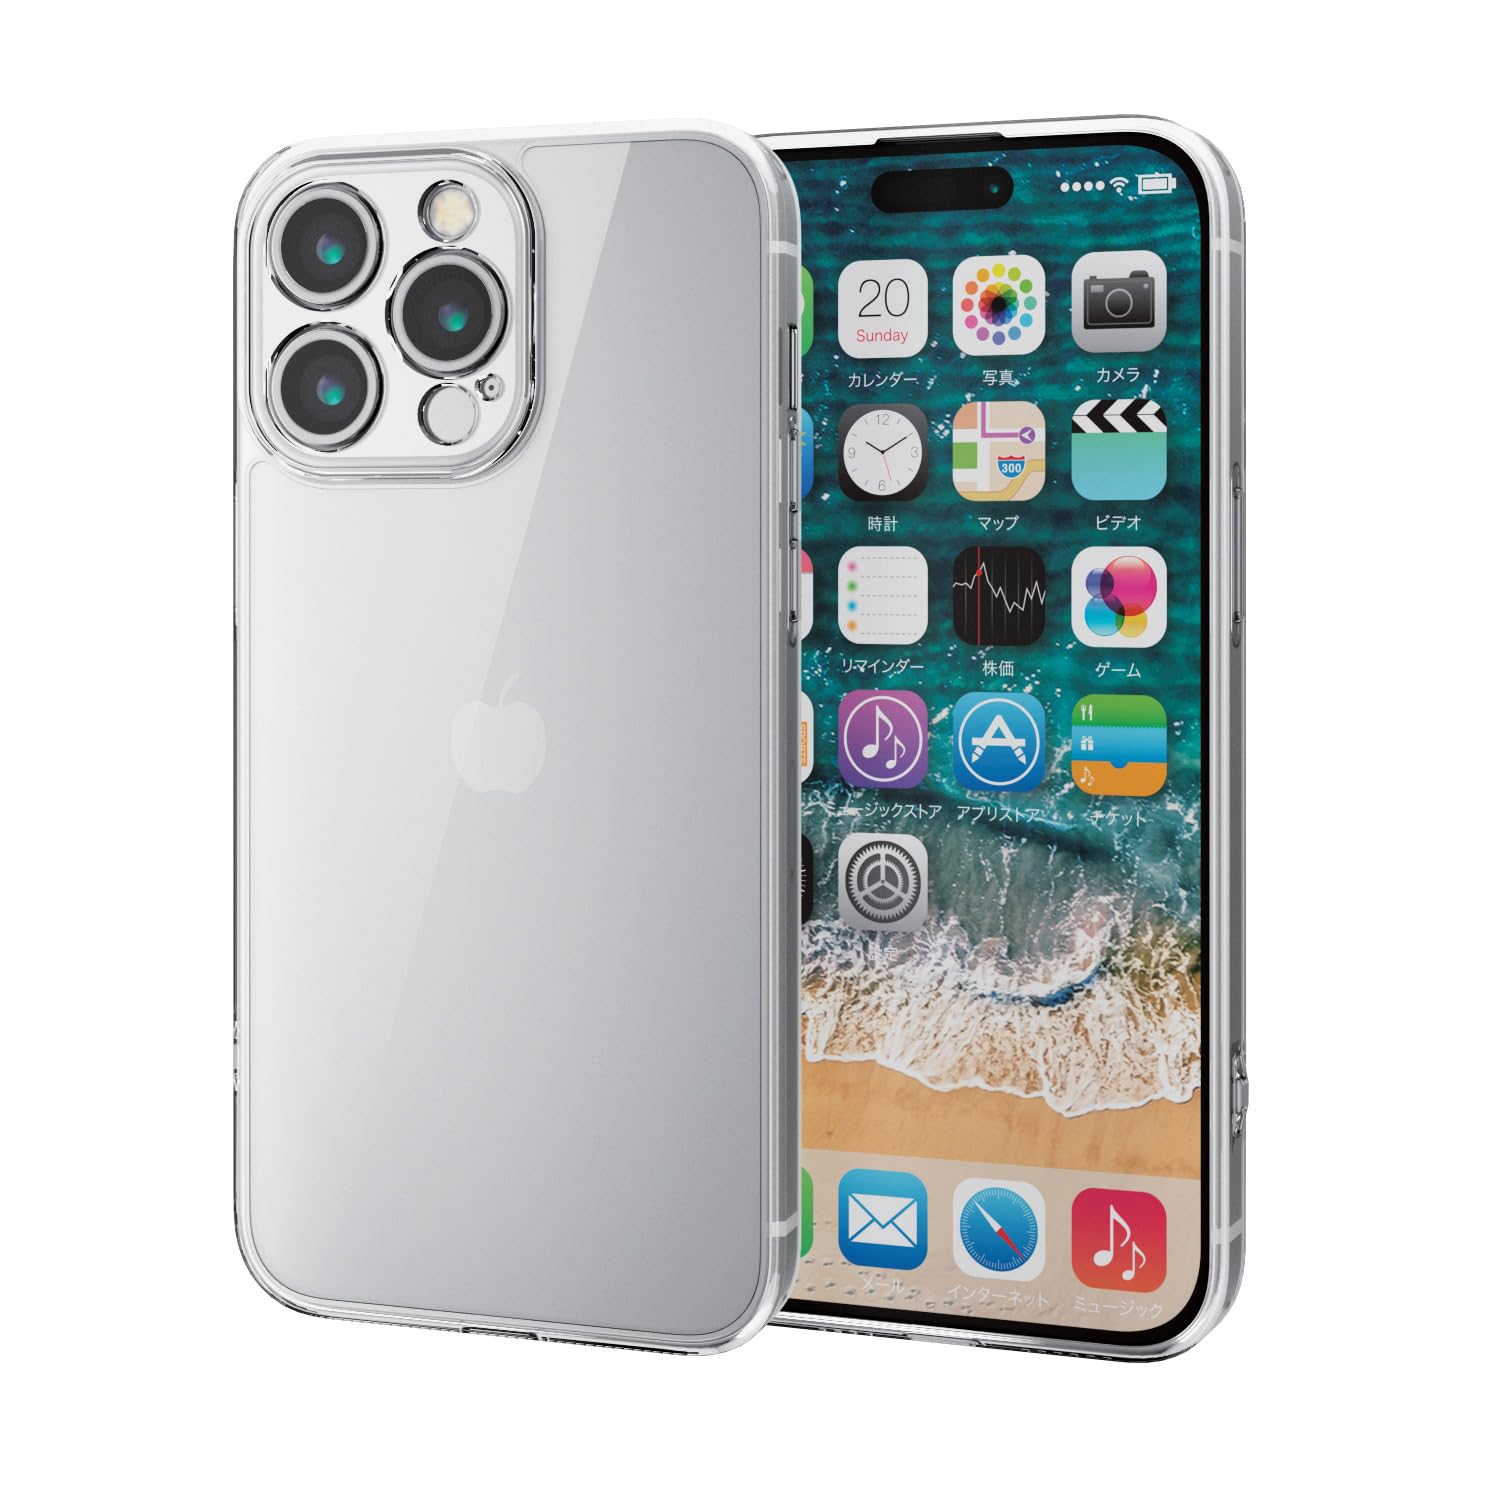 エレコム iPhone15 Pro Max ケース カメラ保護 耐衝撃 衝撃吸収 ハイブリッド素材 四つ角エアークッション ストラップホール付き [カメラ